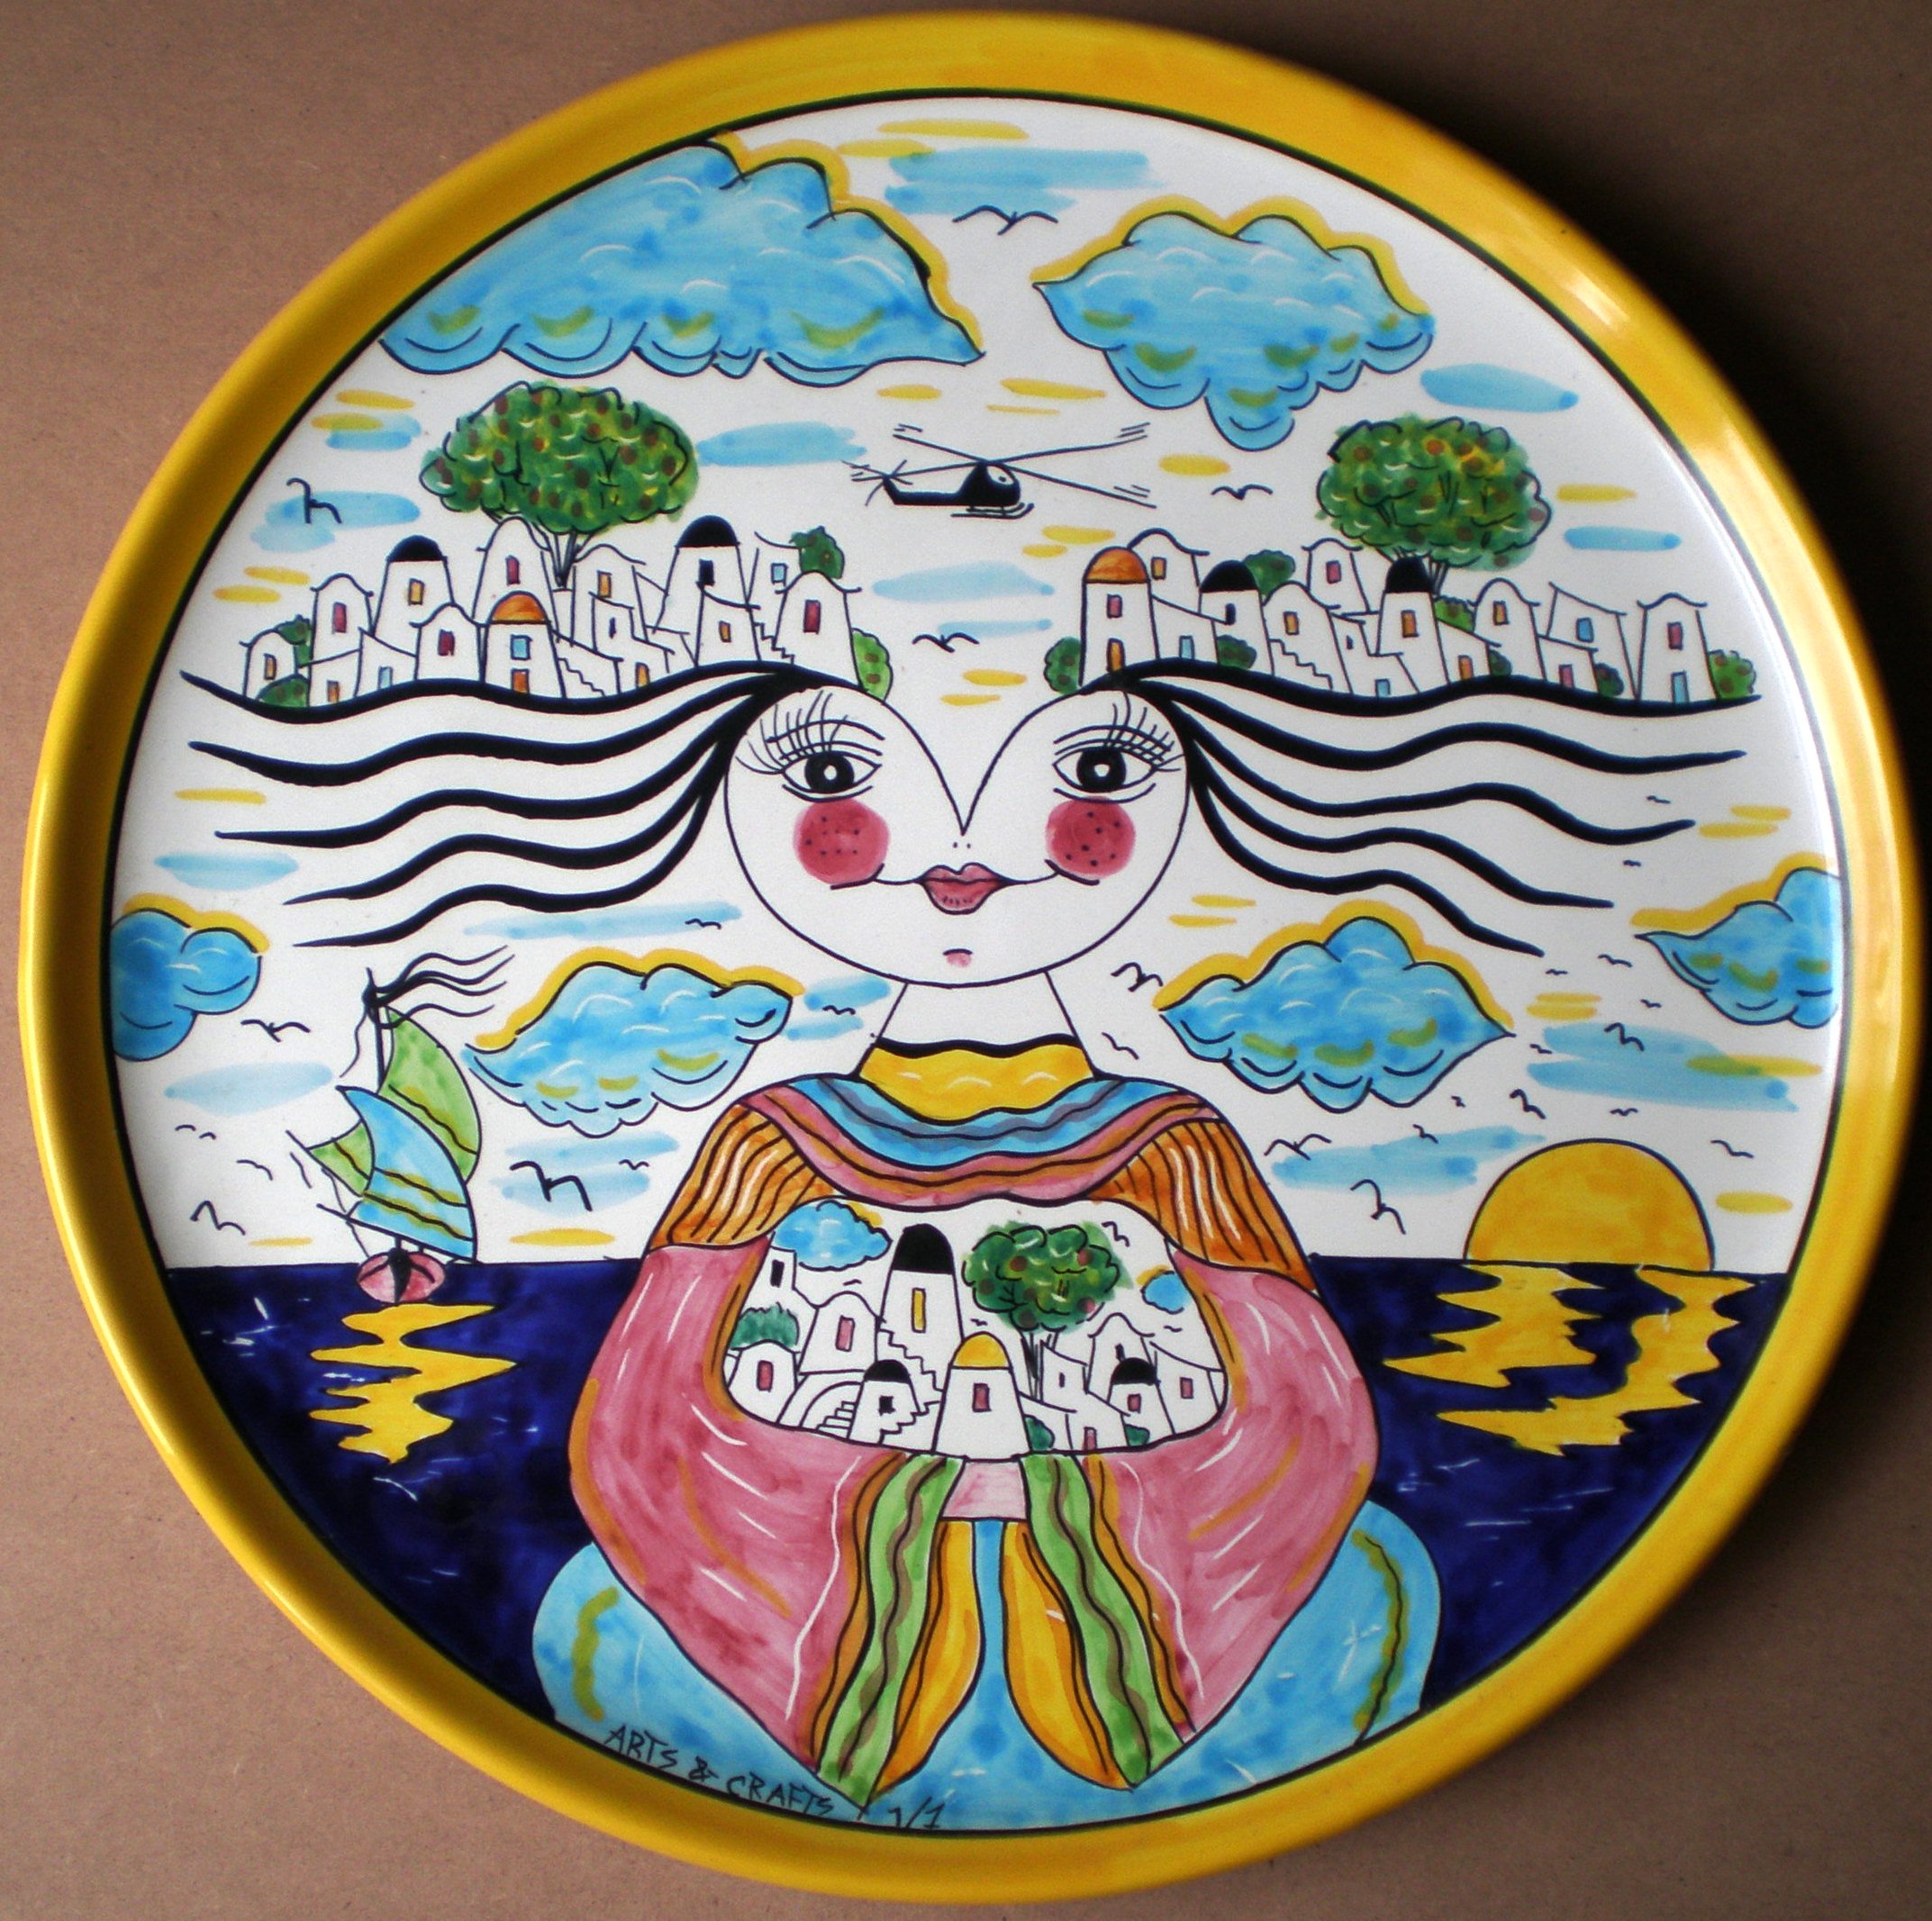 "Decoro Pio" (Decor Pio), 2005 diametro 35 cm , ceramica artistica (ceramic art), Pasquale Mastrogiacomo, Acerno (SA).